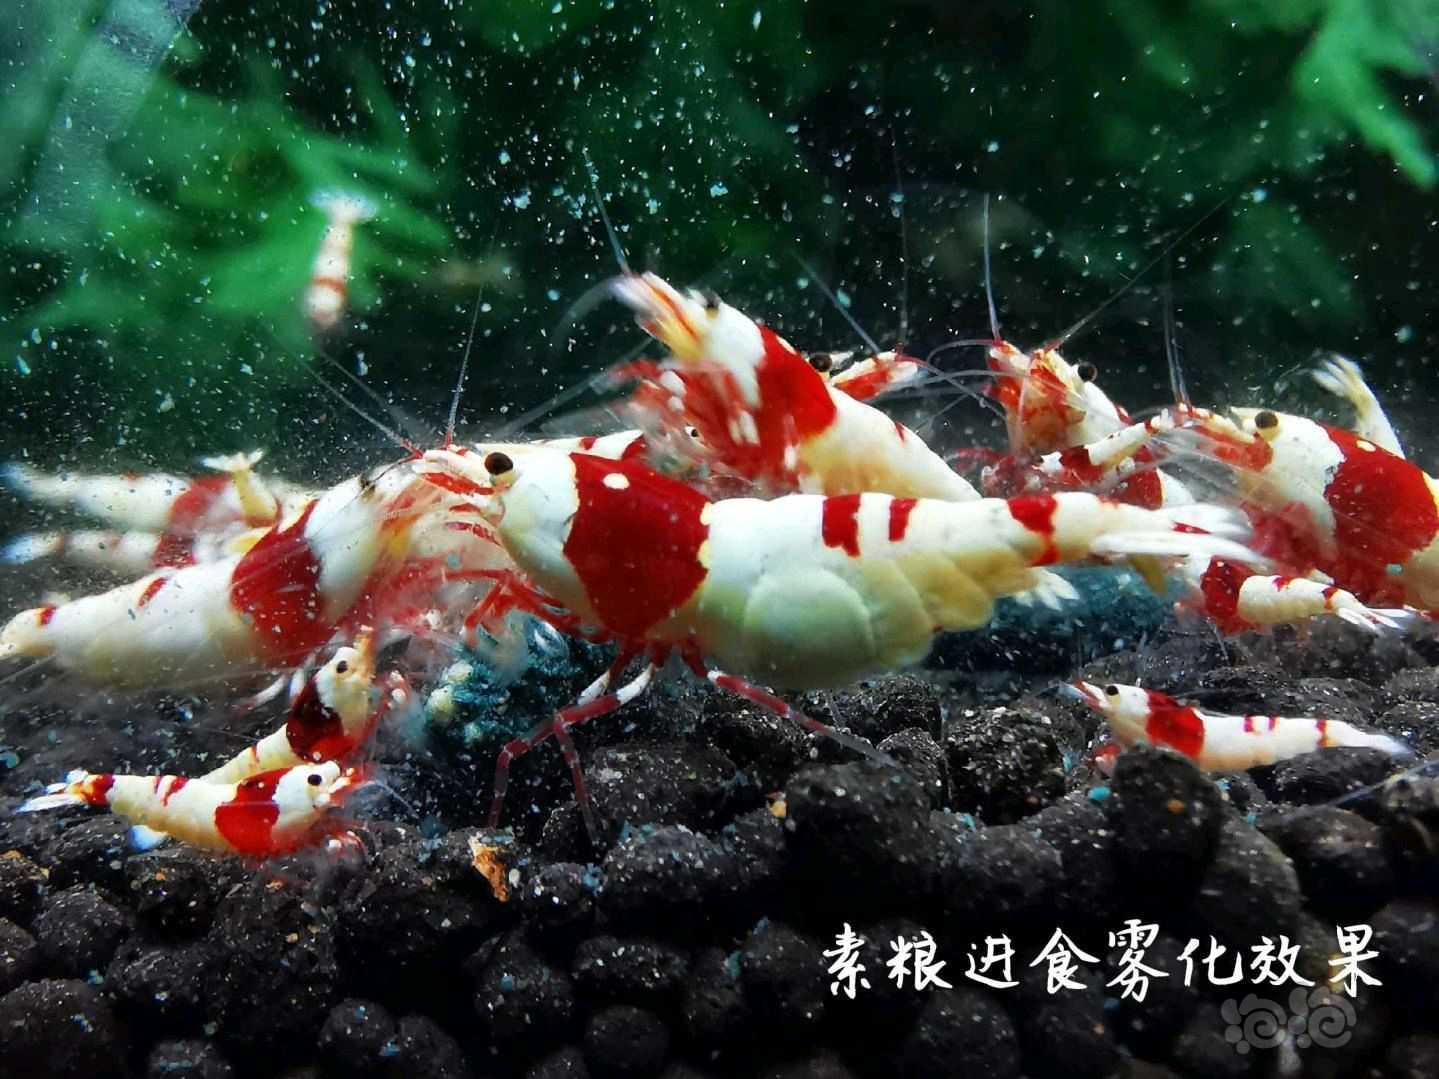 【用品】2021-07-05RMB拍卖瑾福水晶虾饲料套装一套-图6